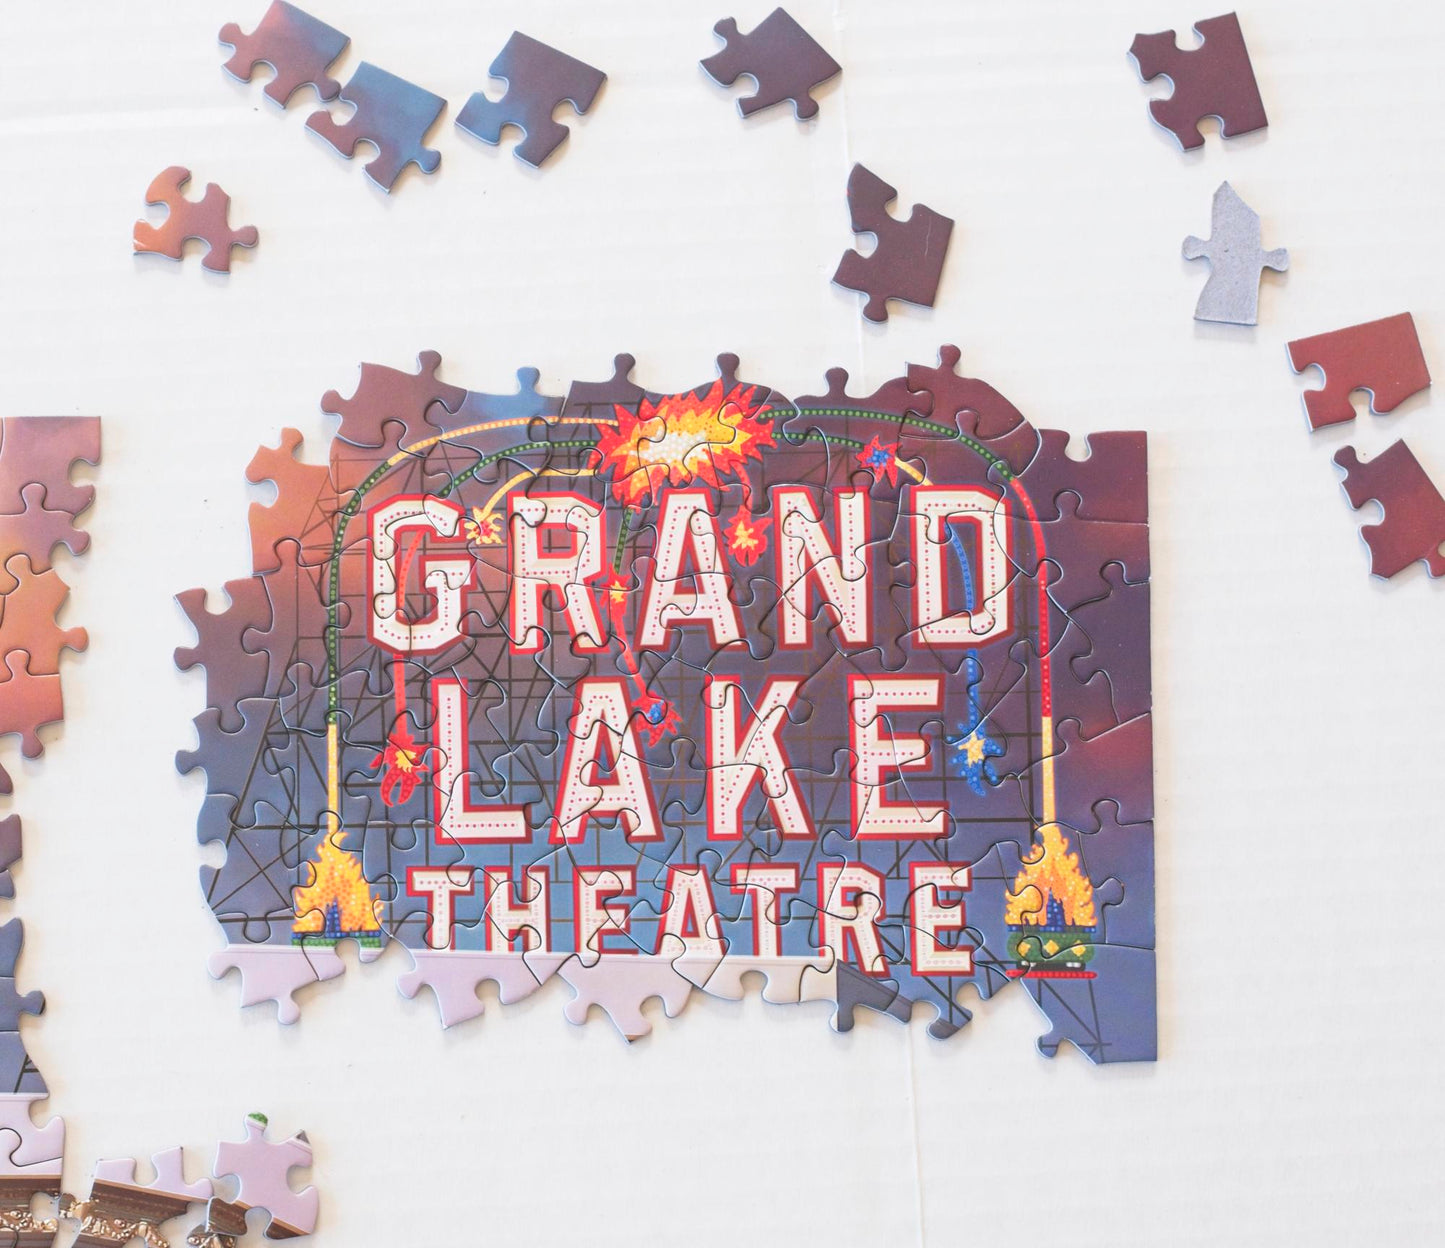 Grand Lake Theatre